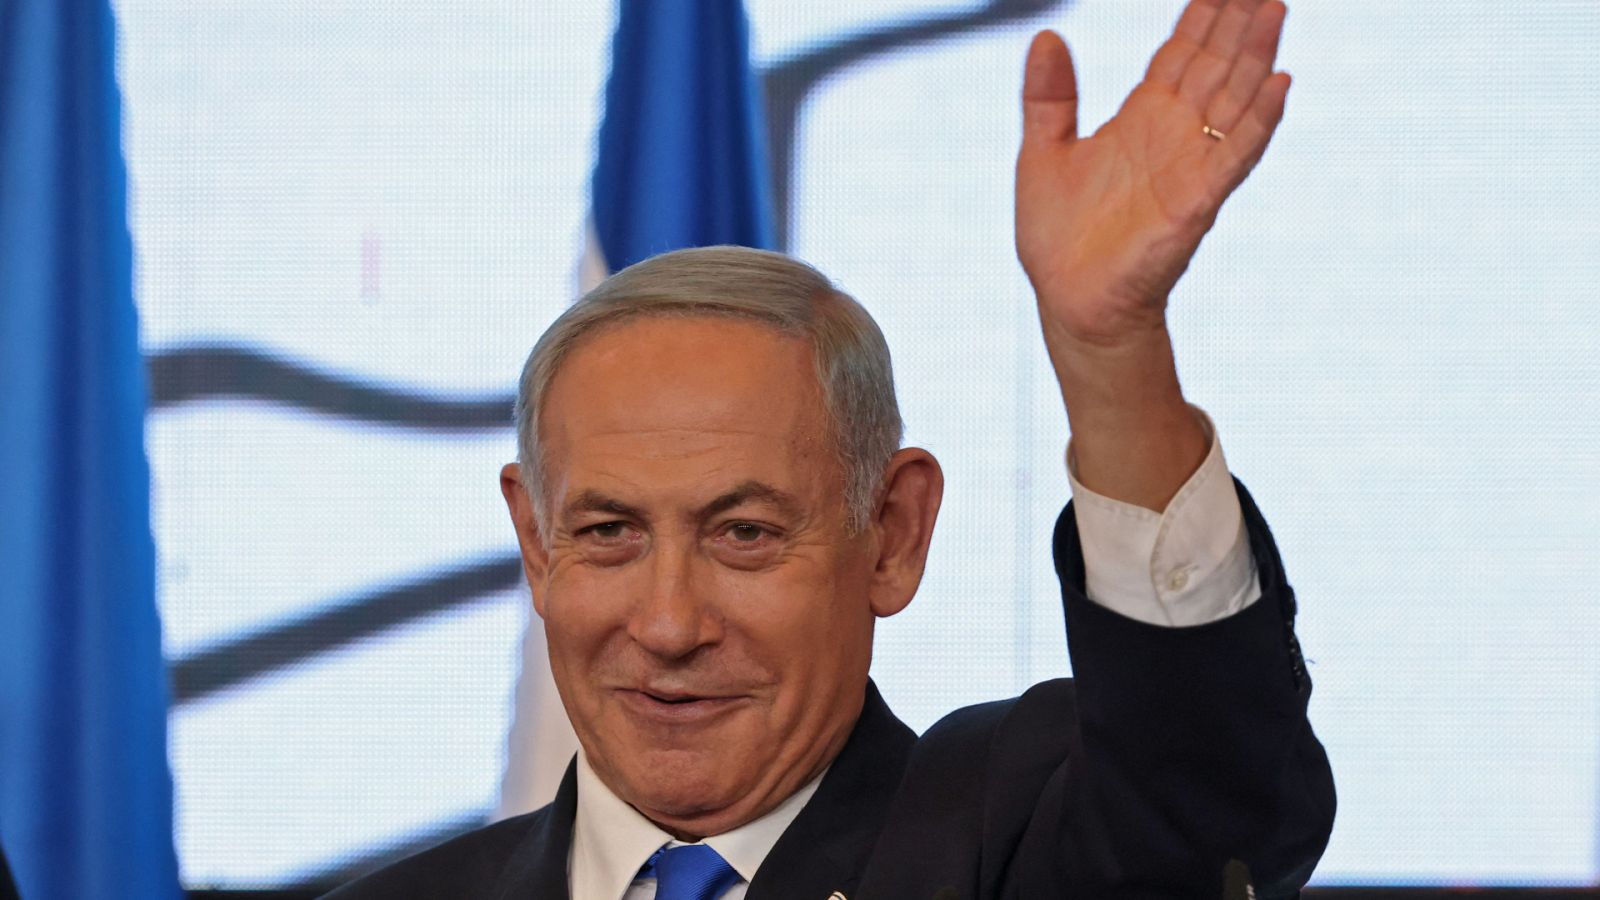 Cinco Continentes - El regreso de Netanyahu aliado con el extremismo - Escuchar ahora